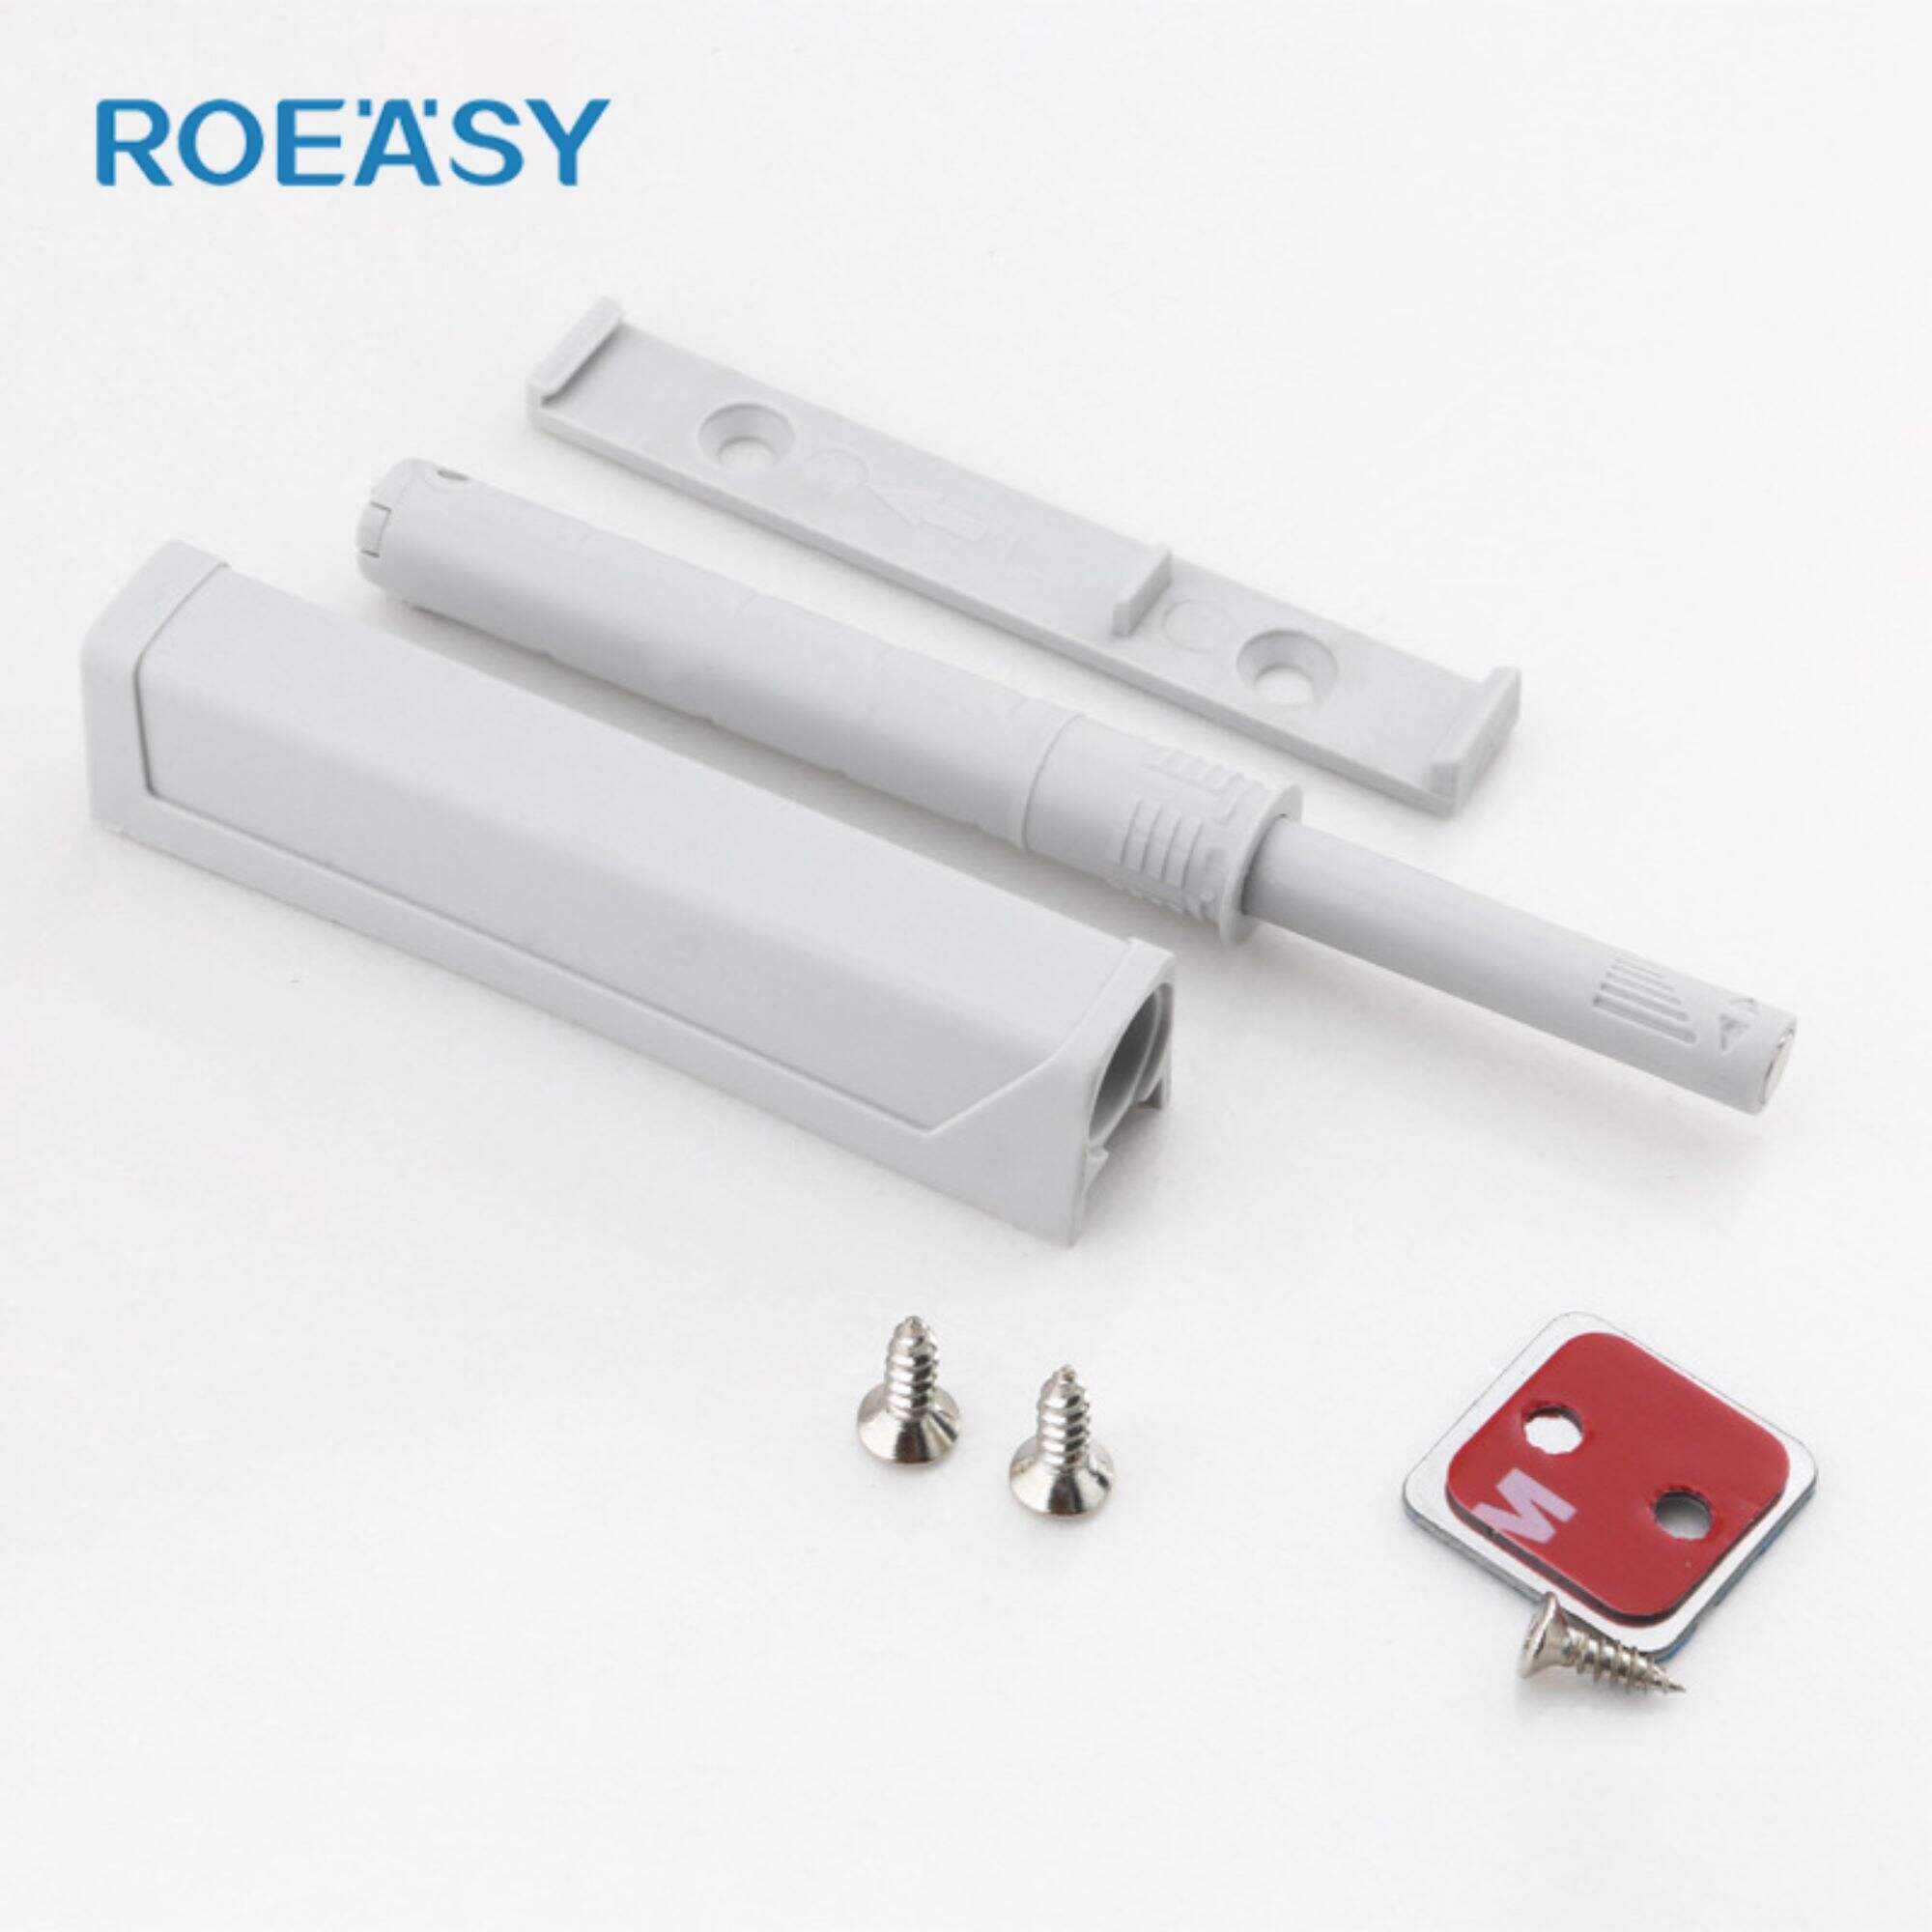 Roeasy RT021A Dụng cụ bắt từ tính để mở chốt cửa tủ